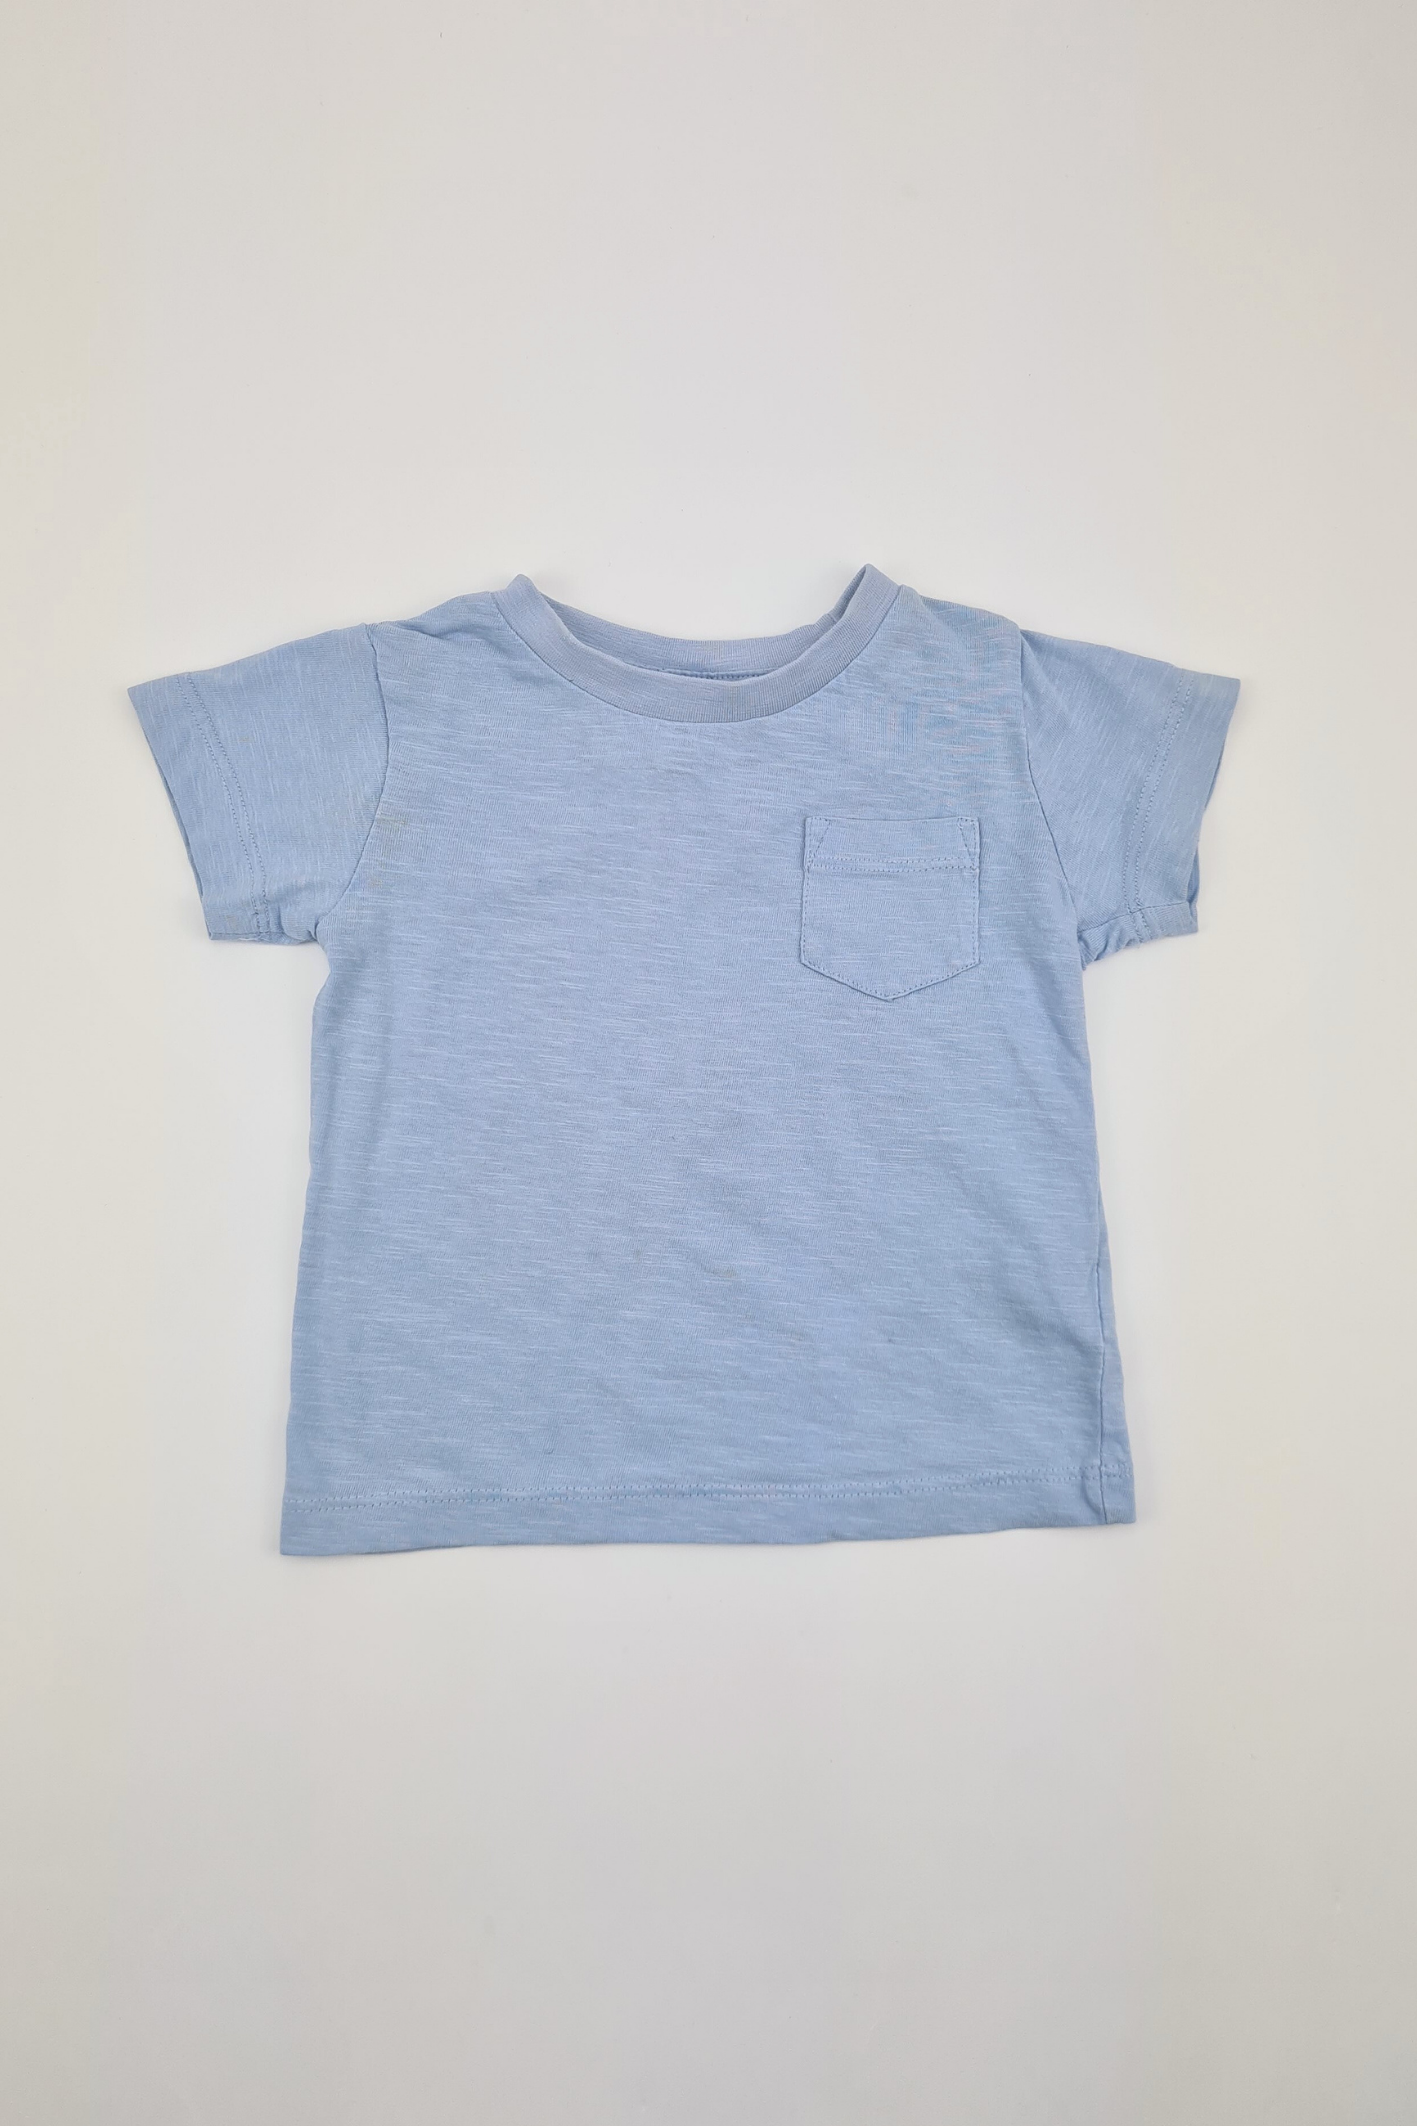 6-9m - Blue T-shirt (Next)